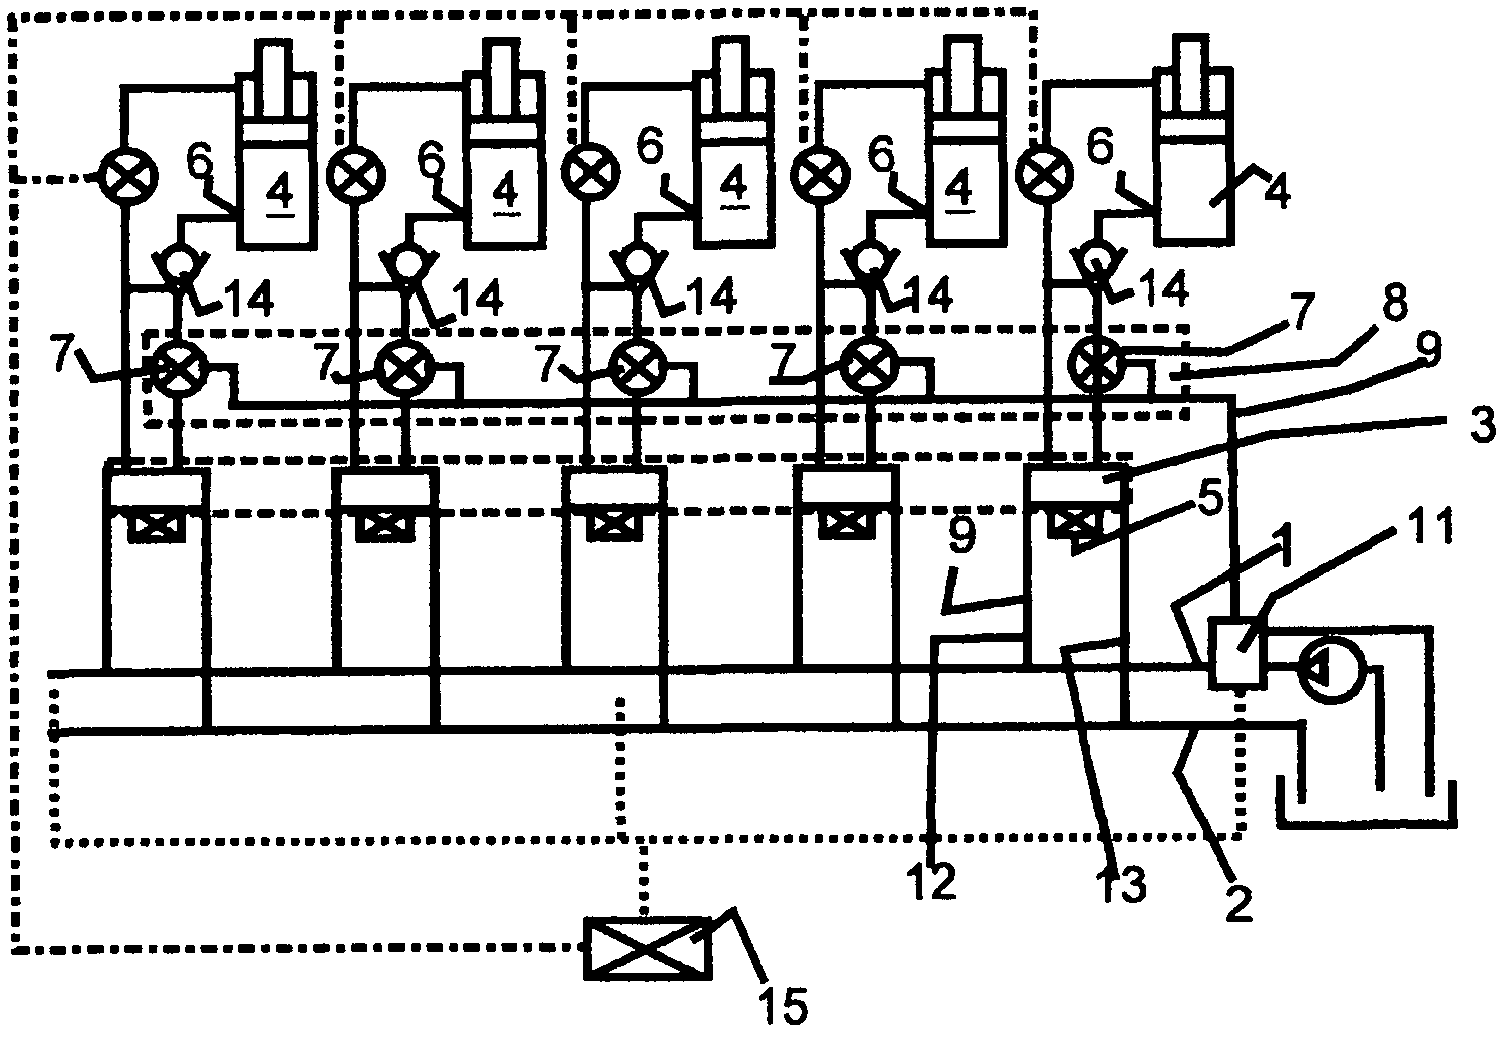 Hydraulic circuit for longwall mining